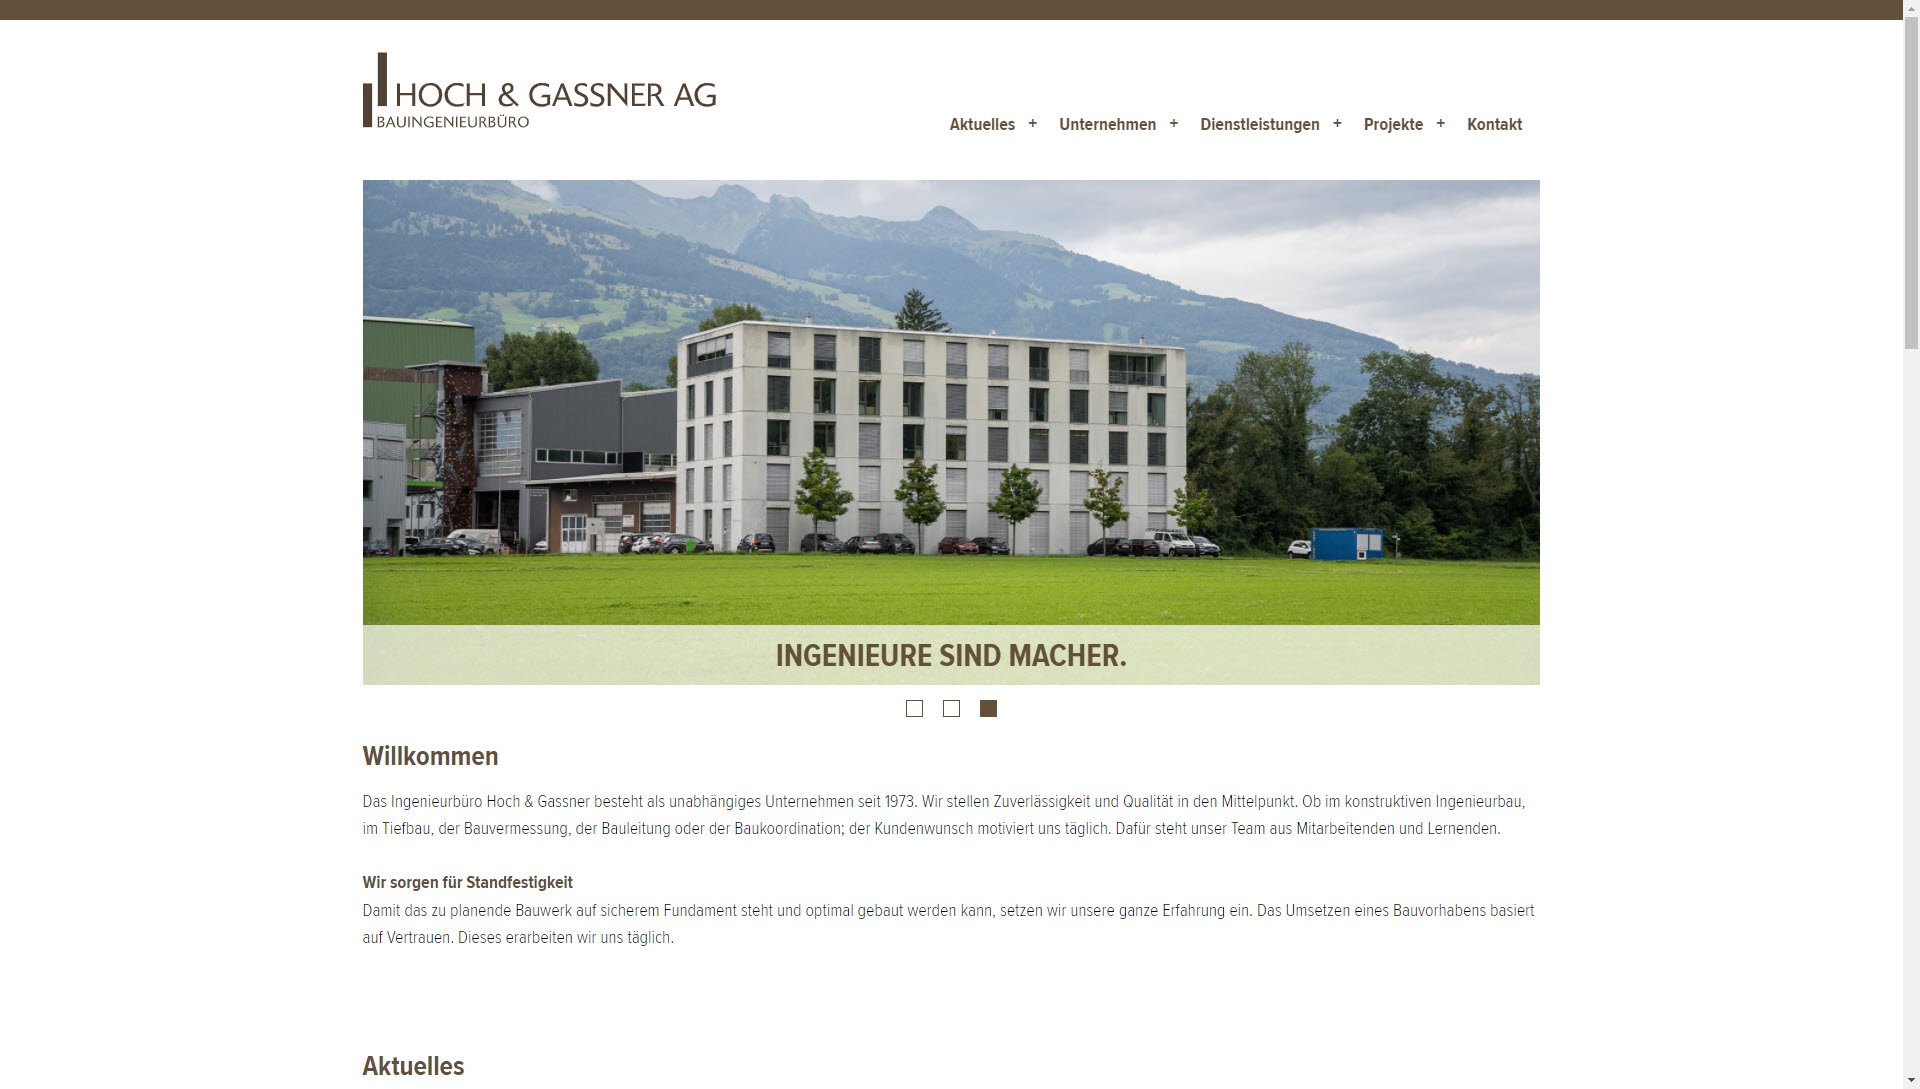 Hoch & Gassner AG